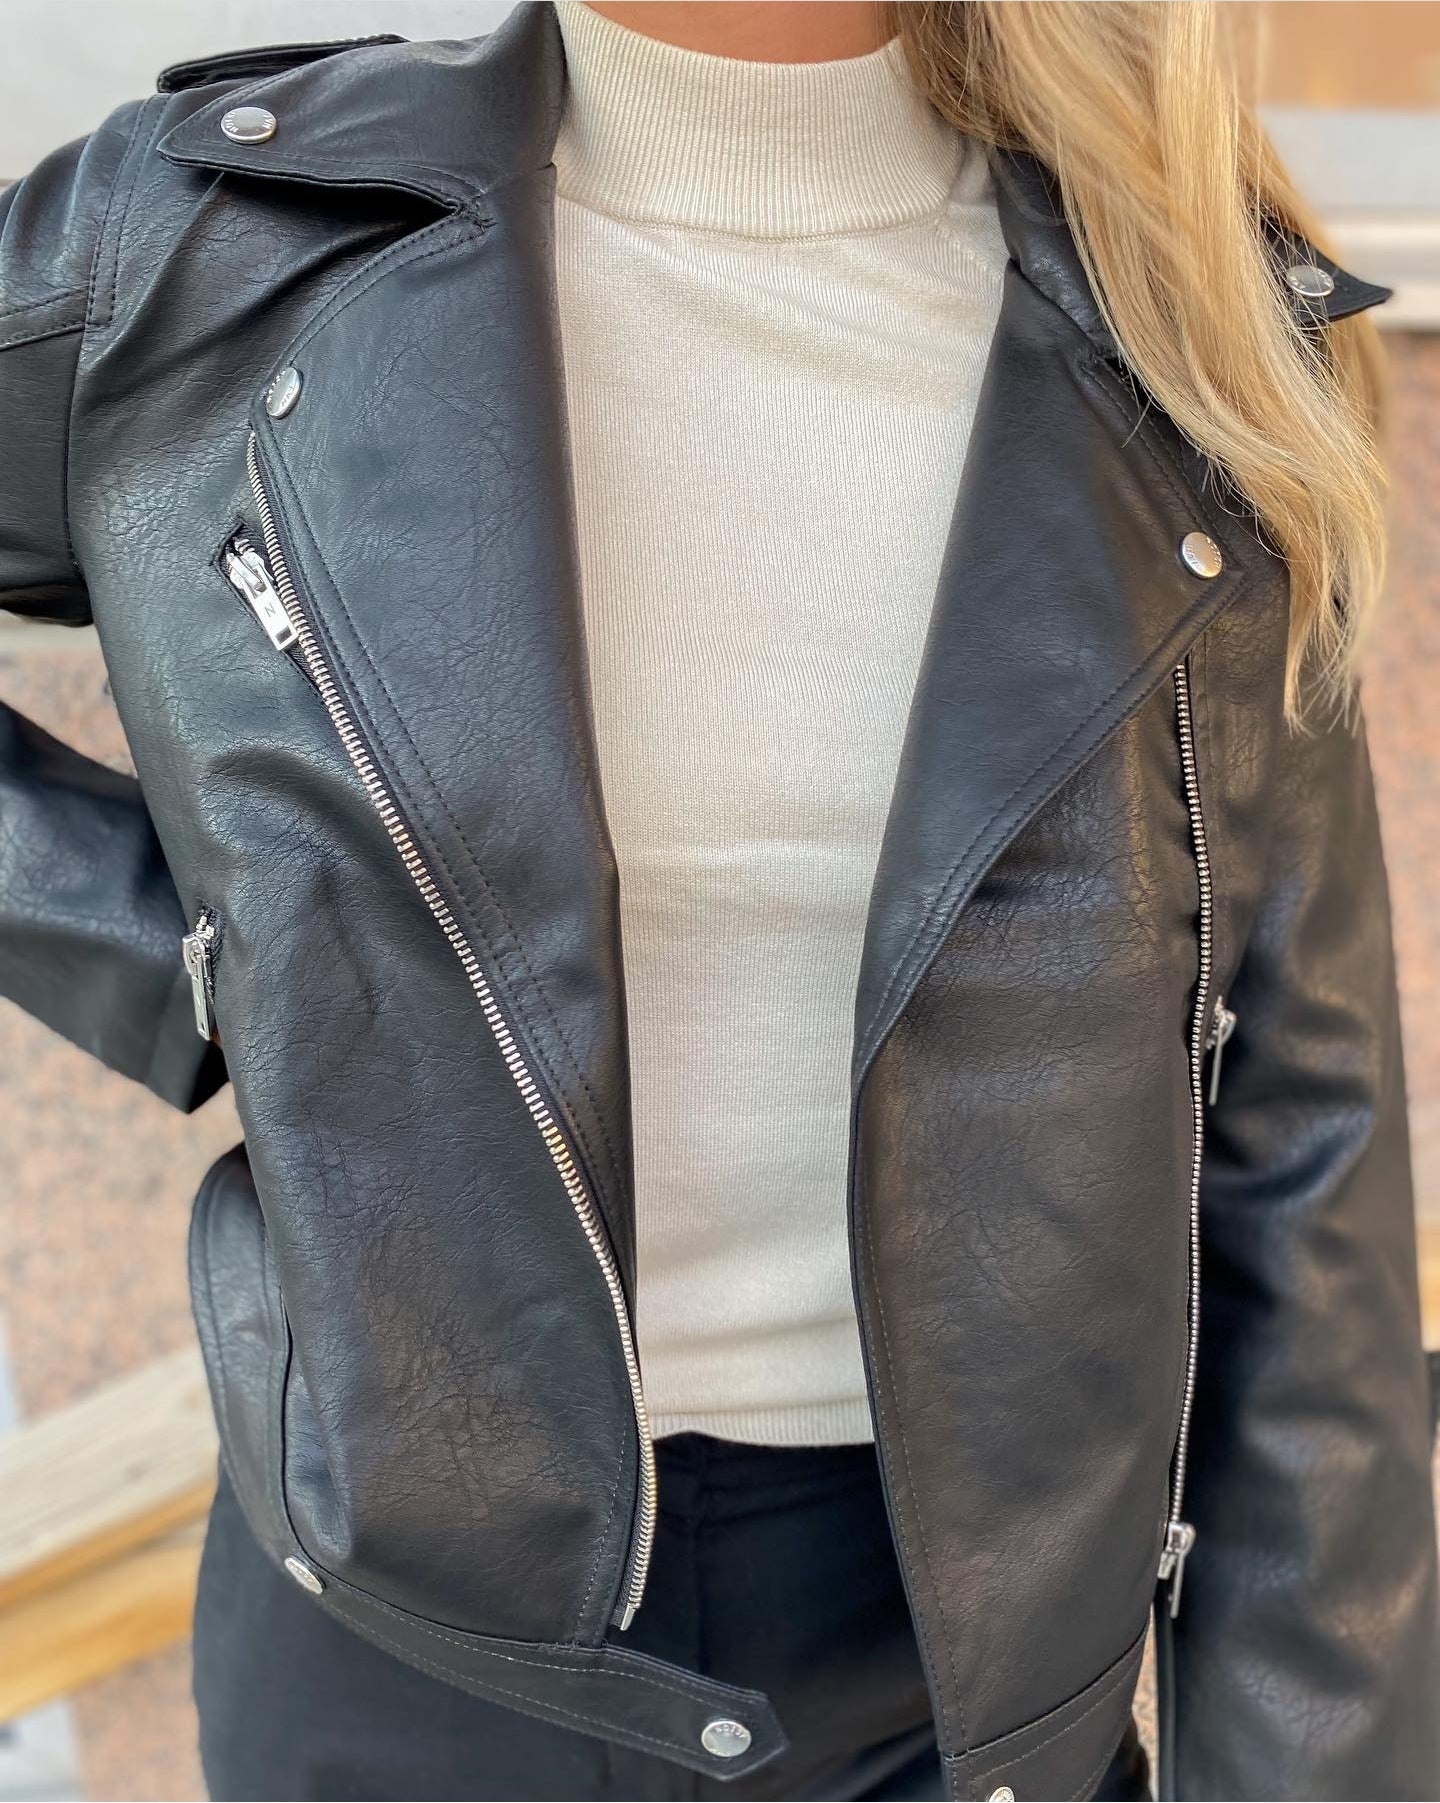 NMROLLO coated jacket - Black